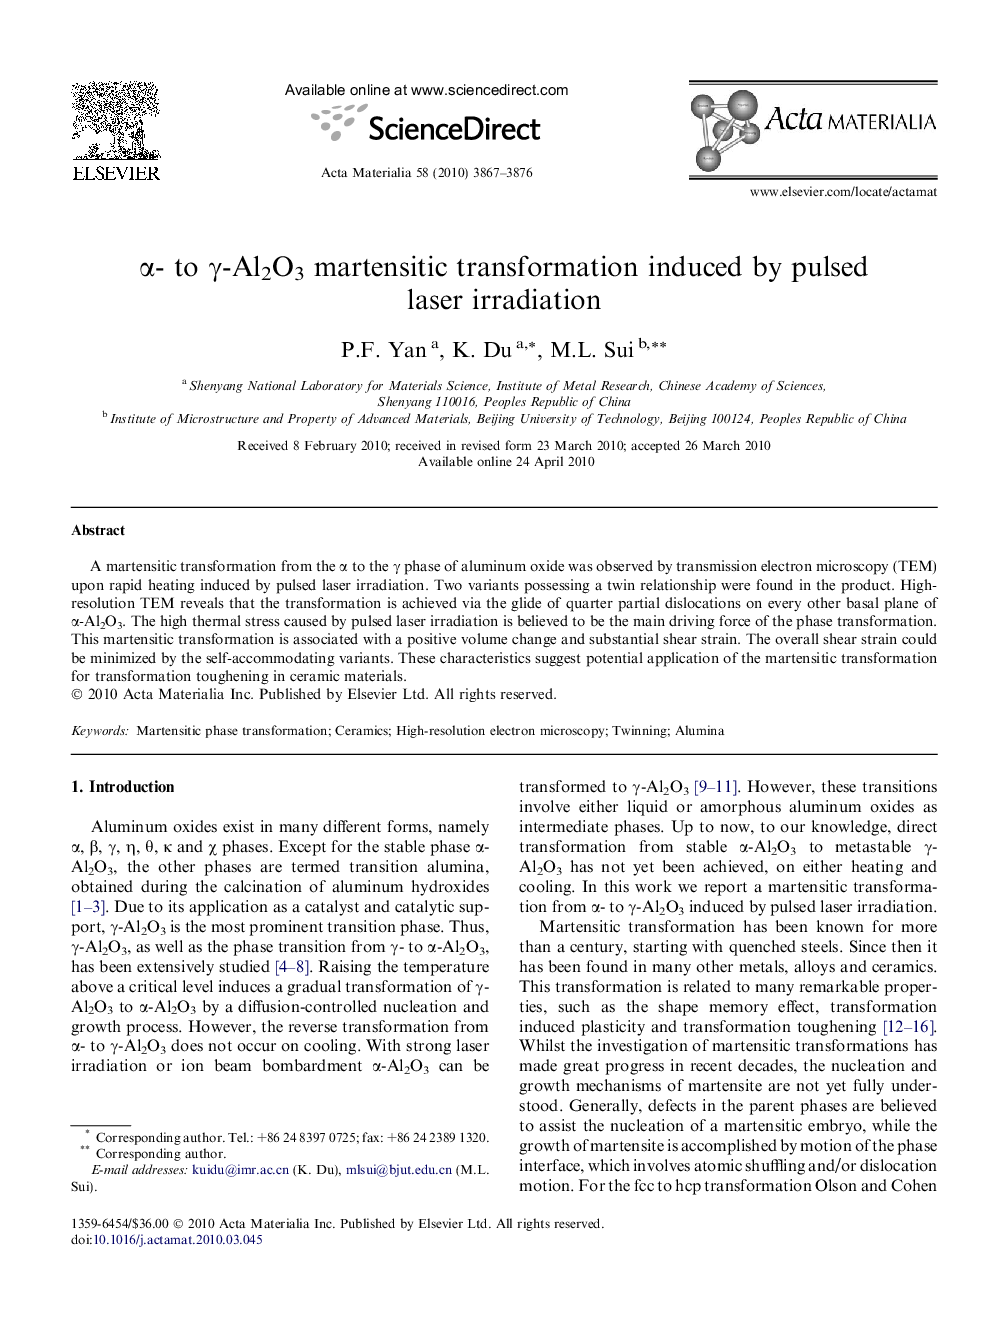 α- to γ-Al2O3 martensitic transformation induced by pulsed laser irradiation